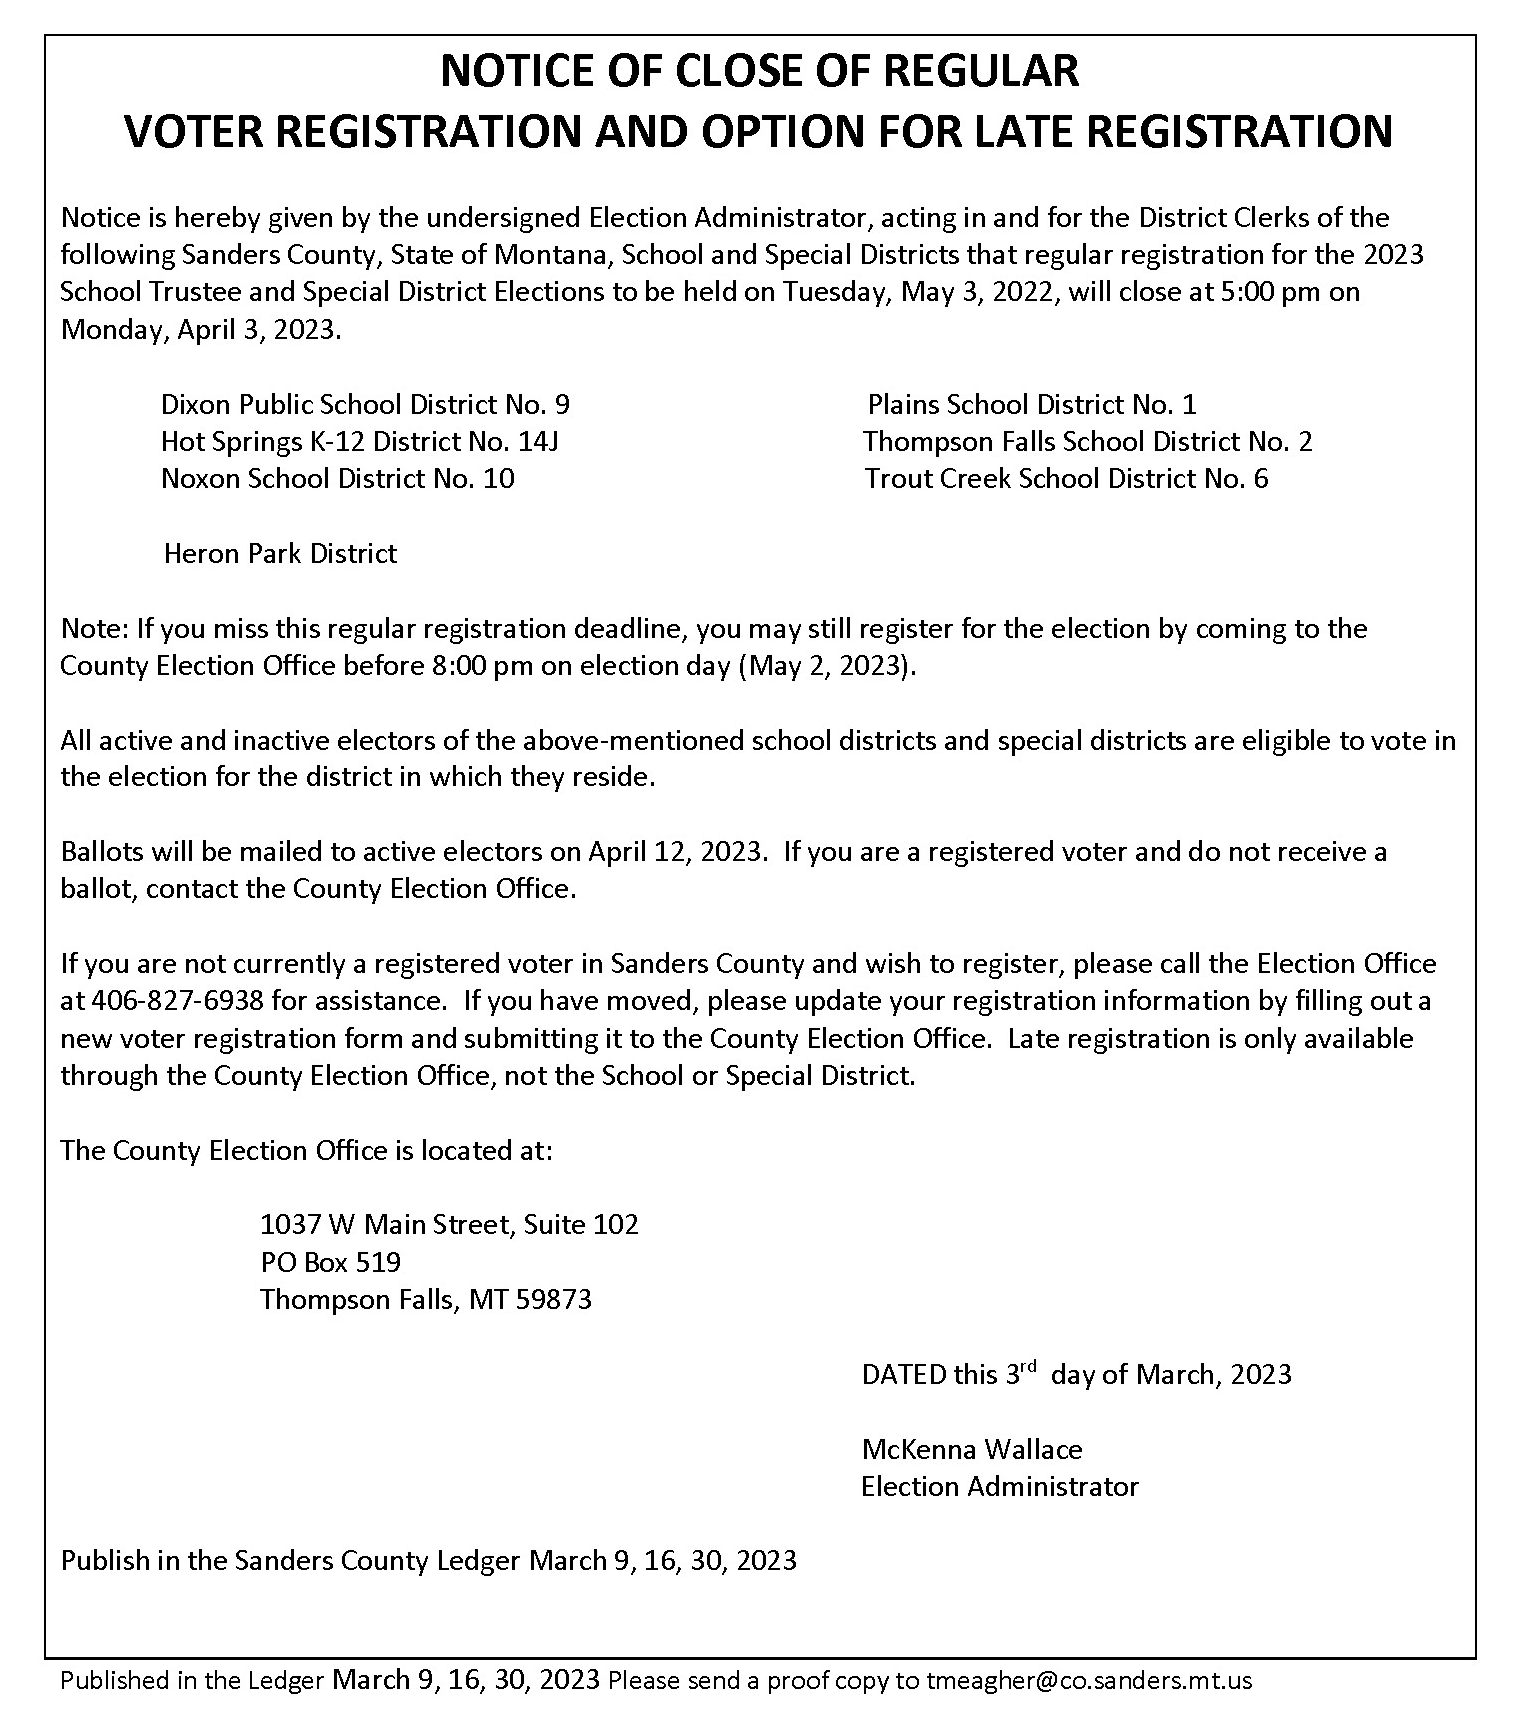 Close of voter registration